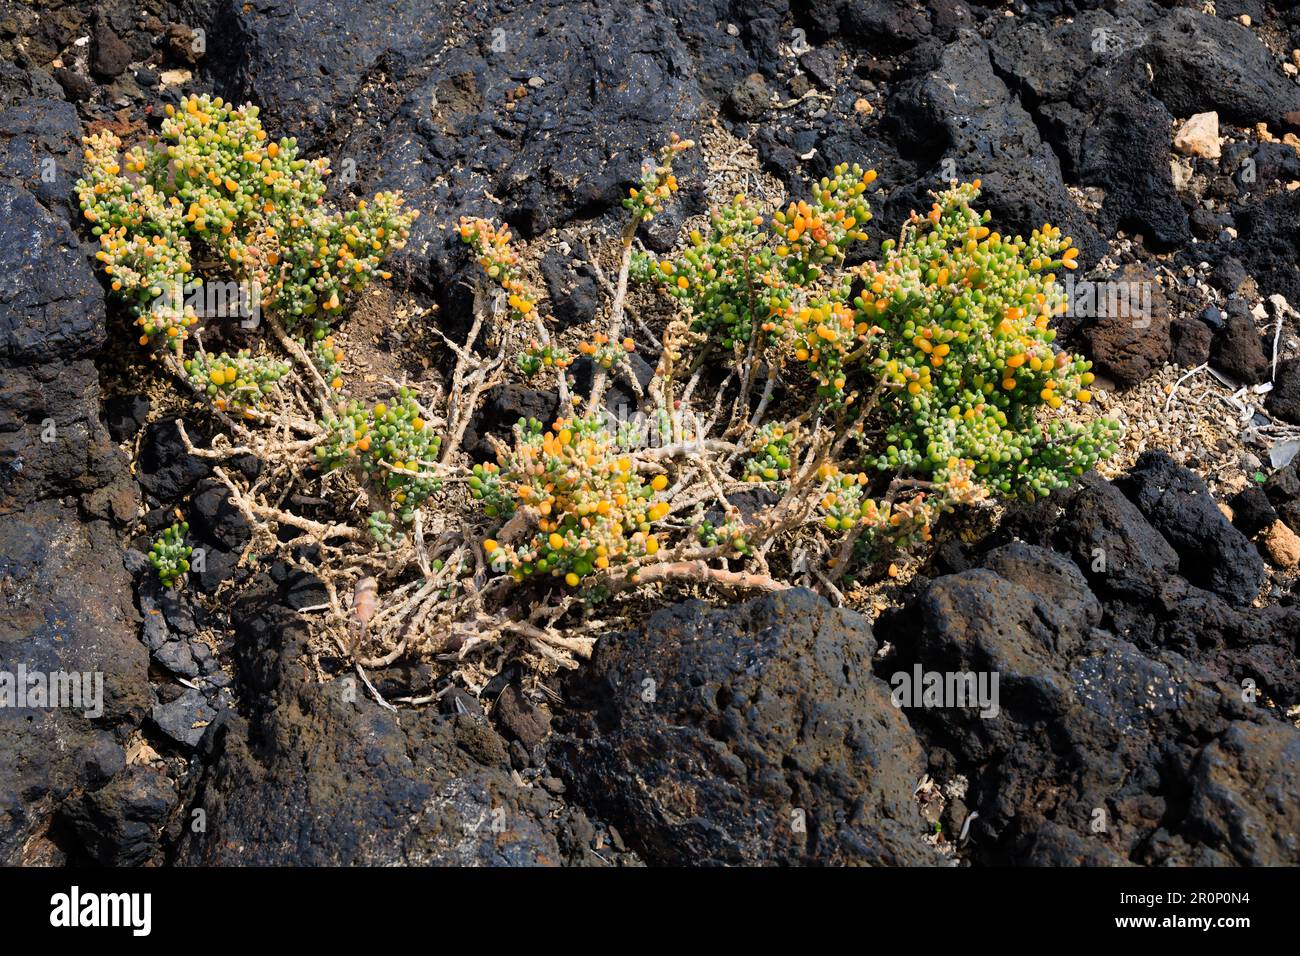 Dünne Eispflanze, Mesembryanthemum, wächst in Lavafelsen. Las Palmas, Gran Canaria, Spanien Stockfoto